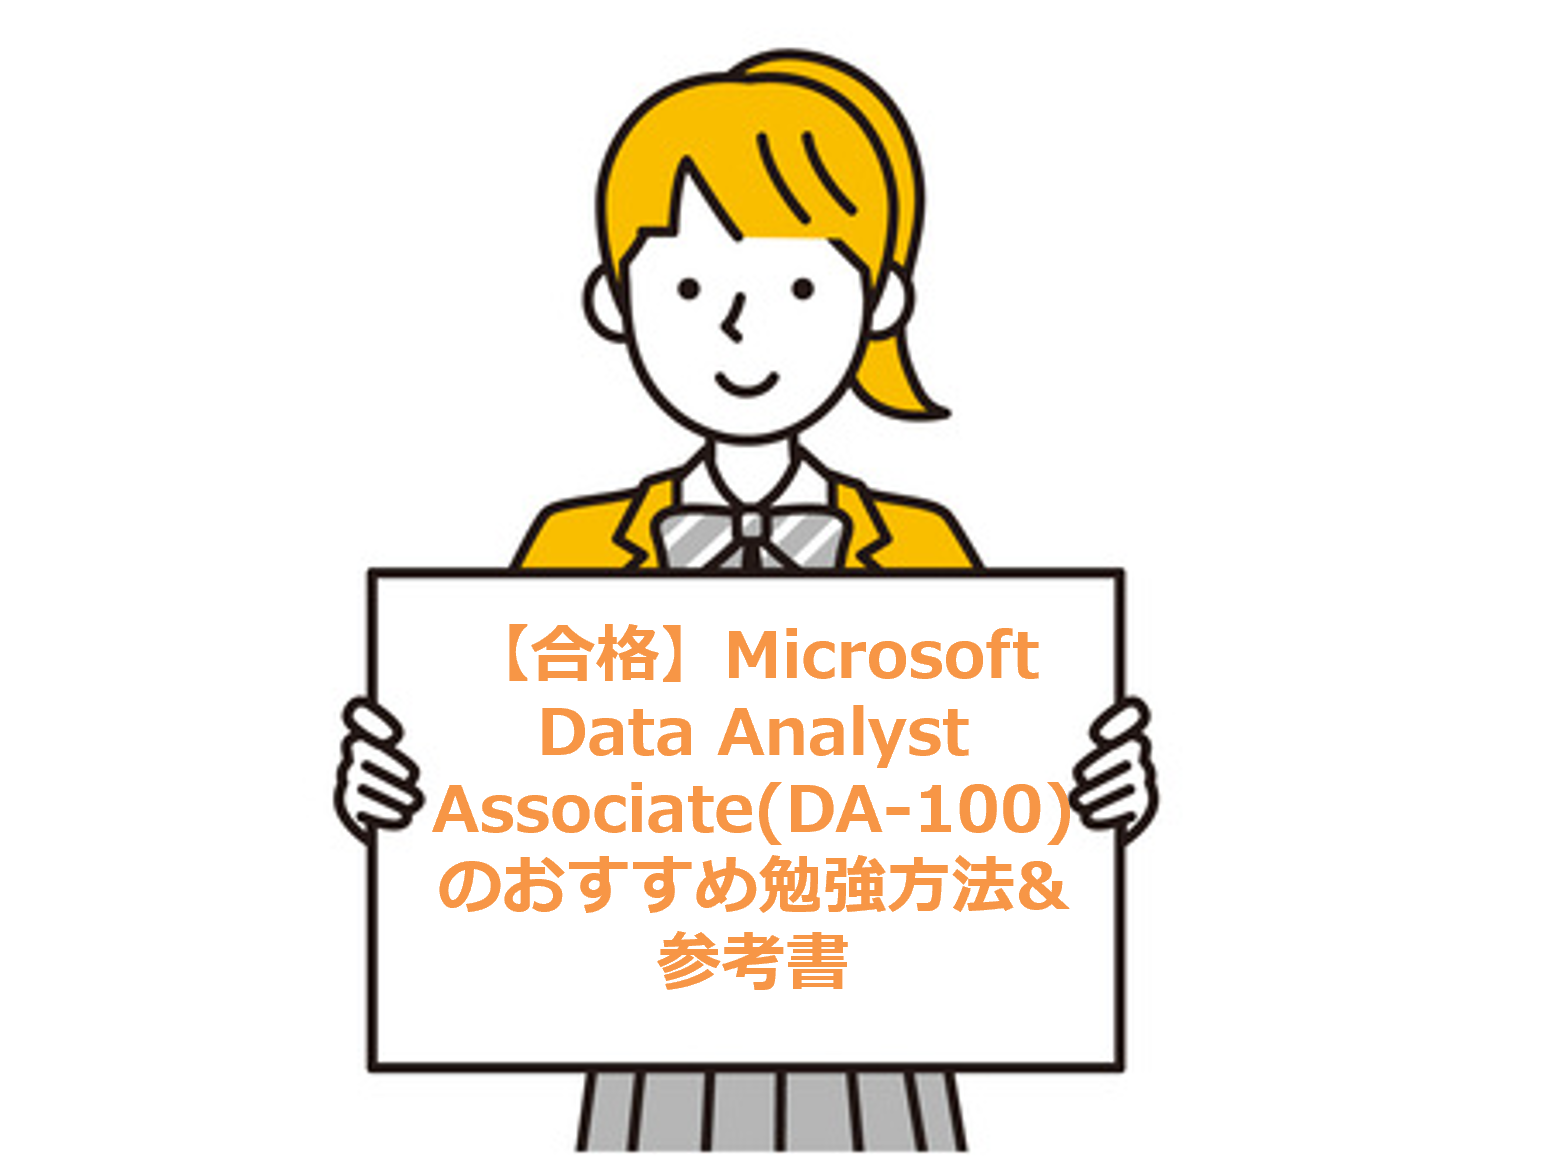 【合格】Microsoft Data Analyst Associate(DA-100)のおすすめ勉強方法&参考書